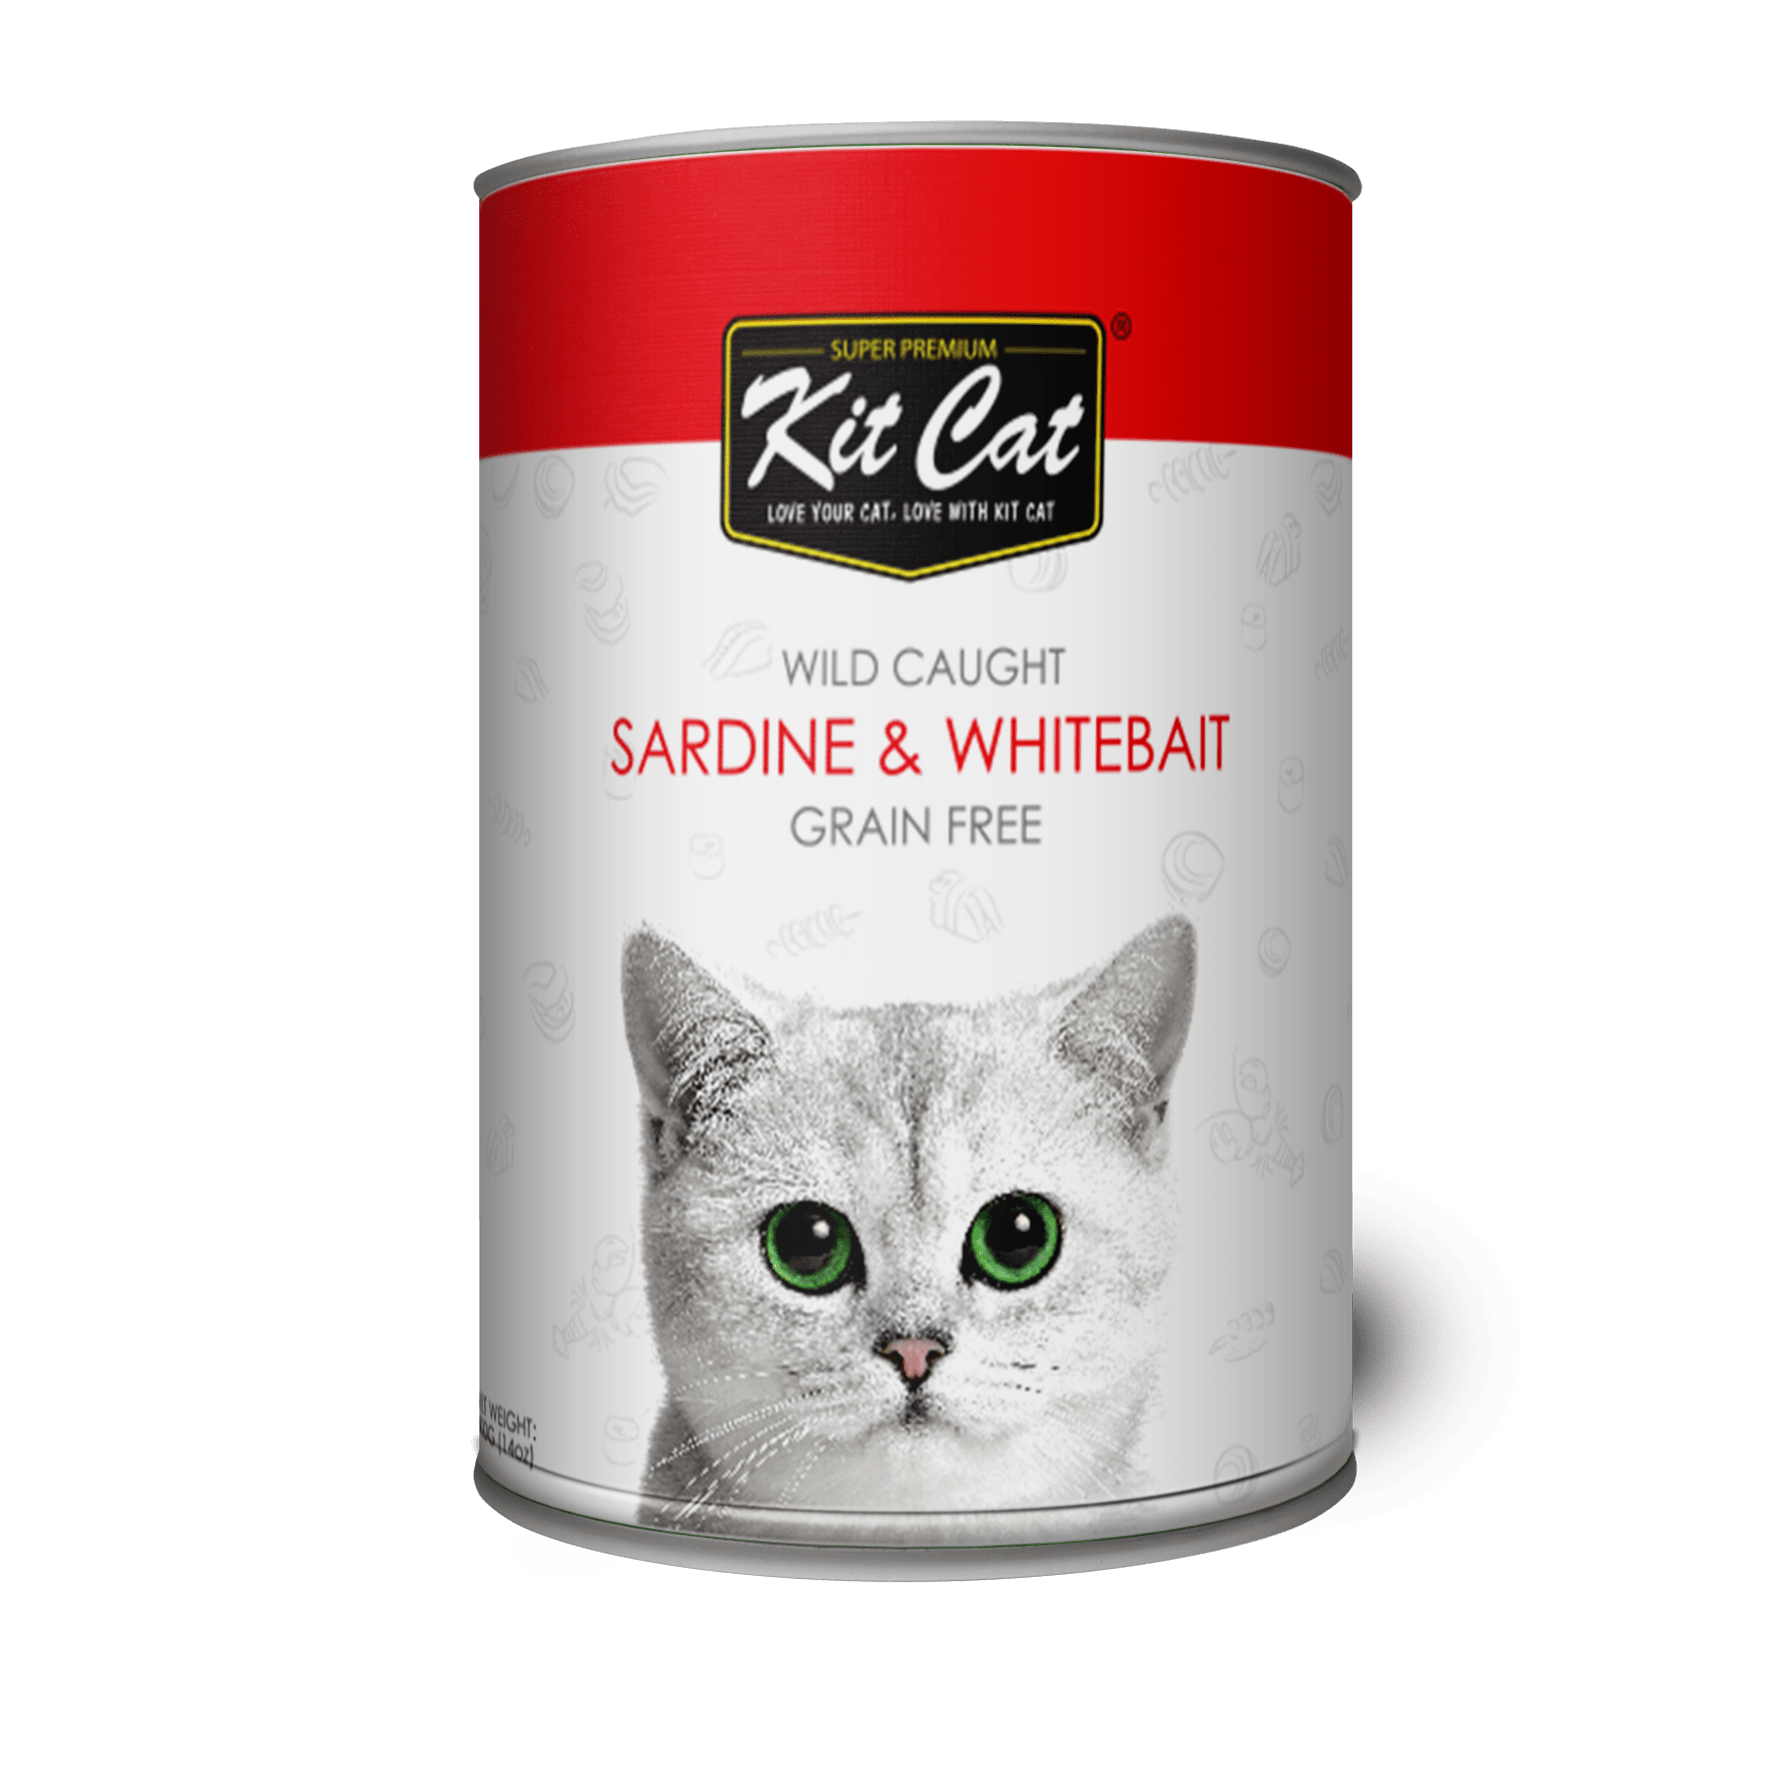 Красный корм для кошек. Кошачий корм. Kit Cat корм. Кит кэтс корм для кошек. Petshop корм для кошек.